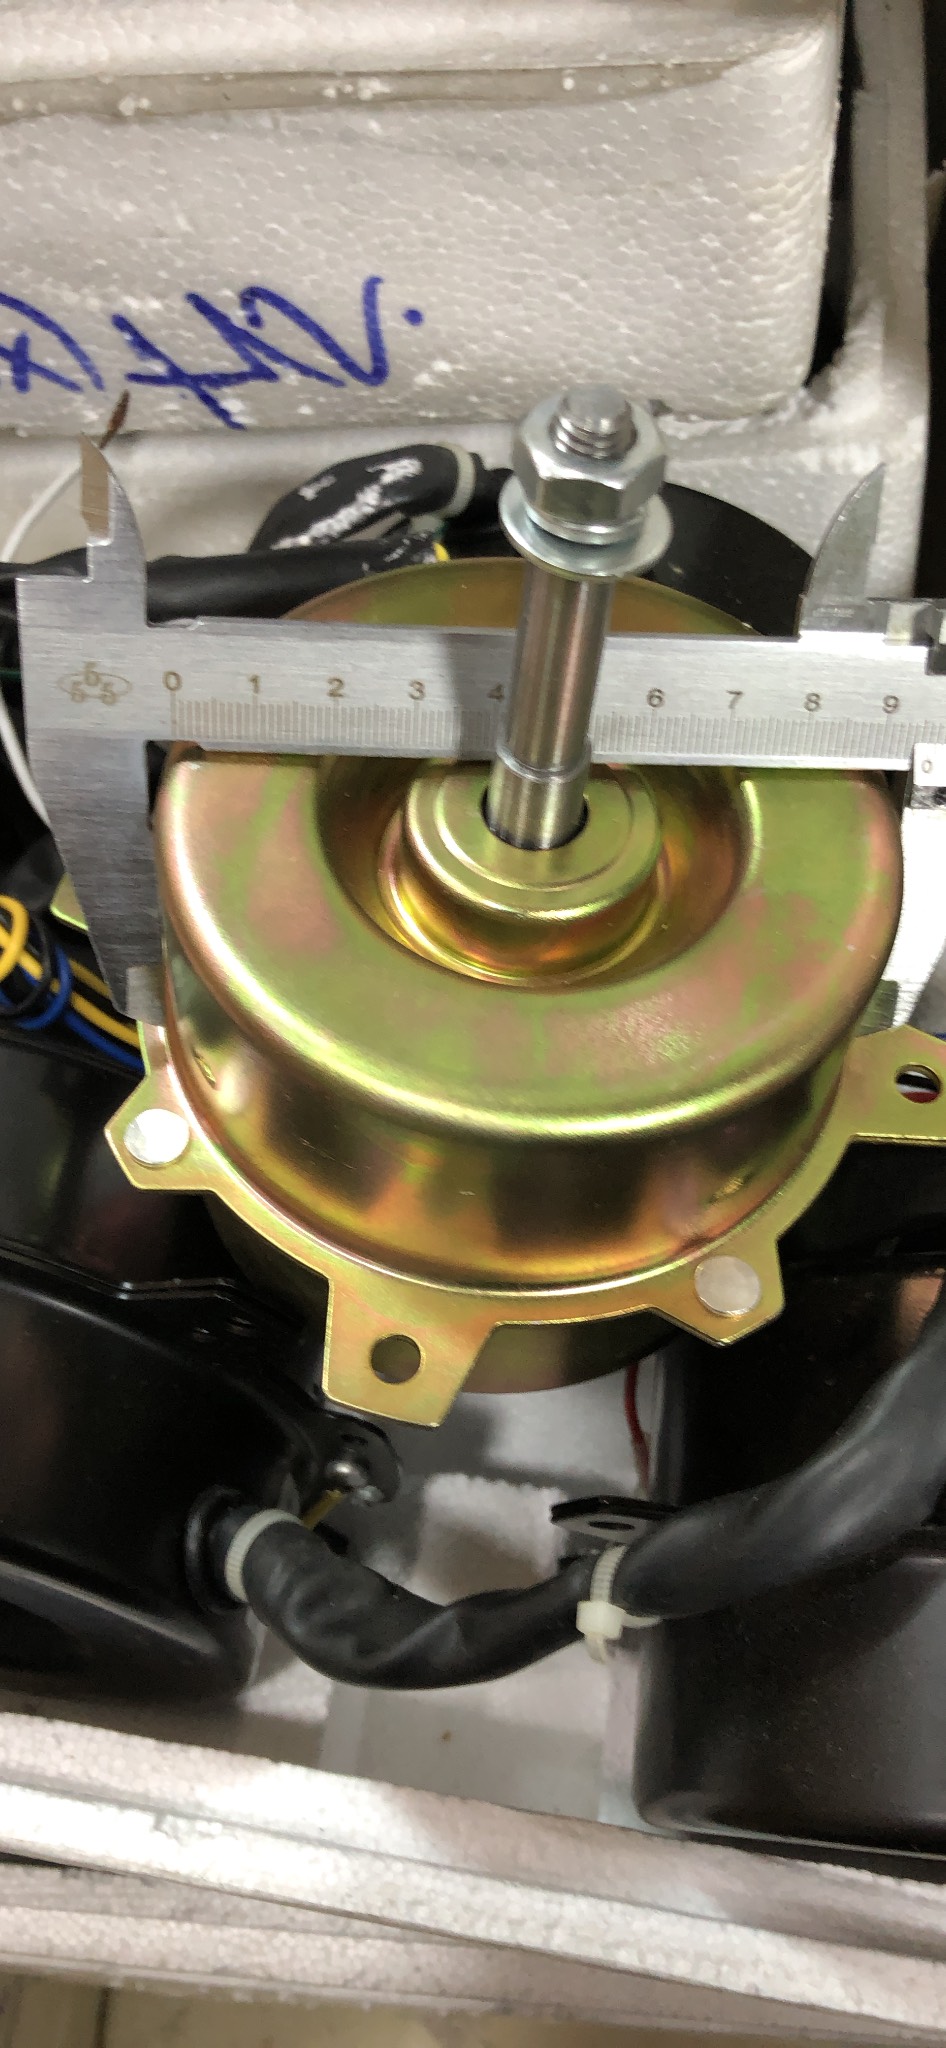 Motor quạt điều hoà hơi nước động cơ thay thế lõi đồng 3 tốc độ công suất 25W~200W trục 8mm 10mm 12mm